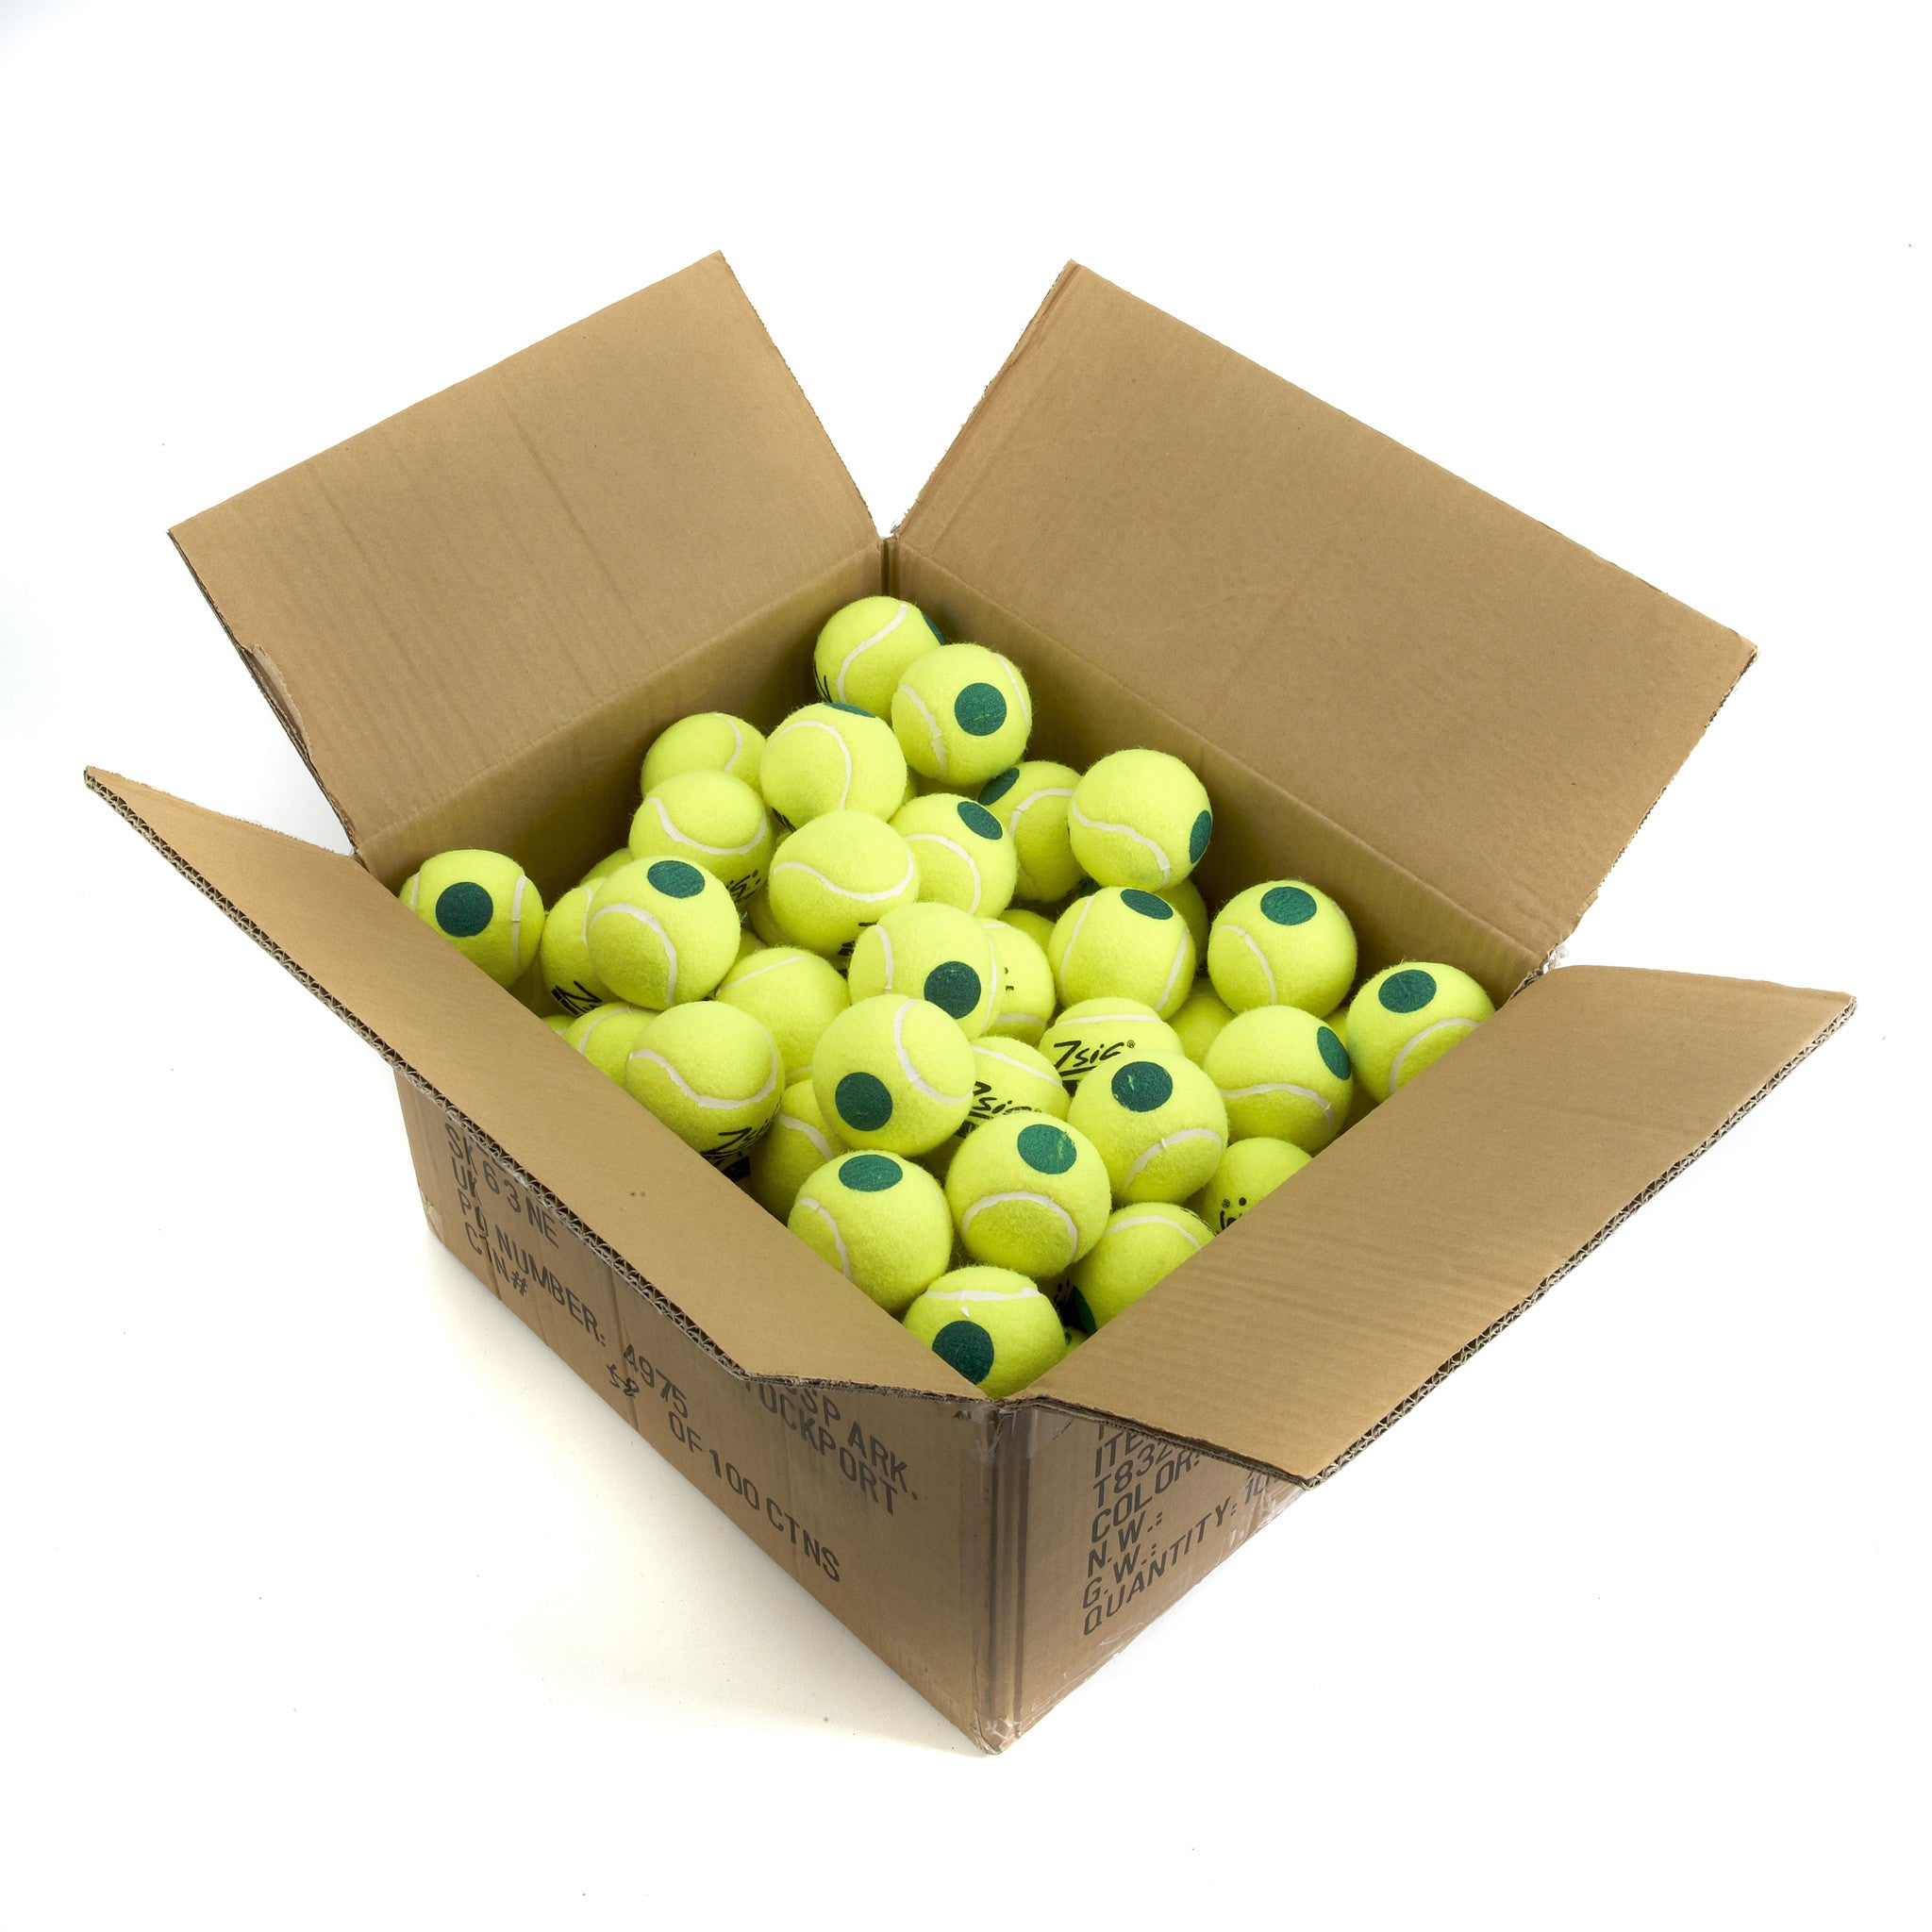 Green Dot Mini Tennis Balls. 10 Dozen Balls in a carton